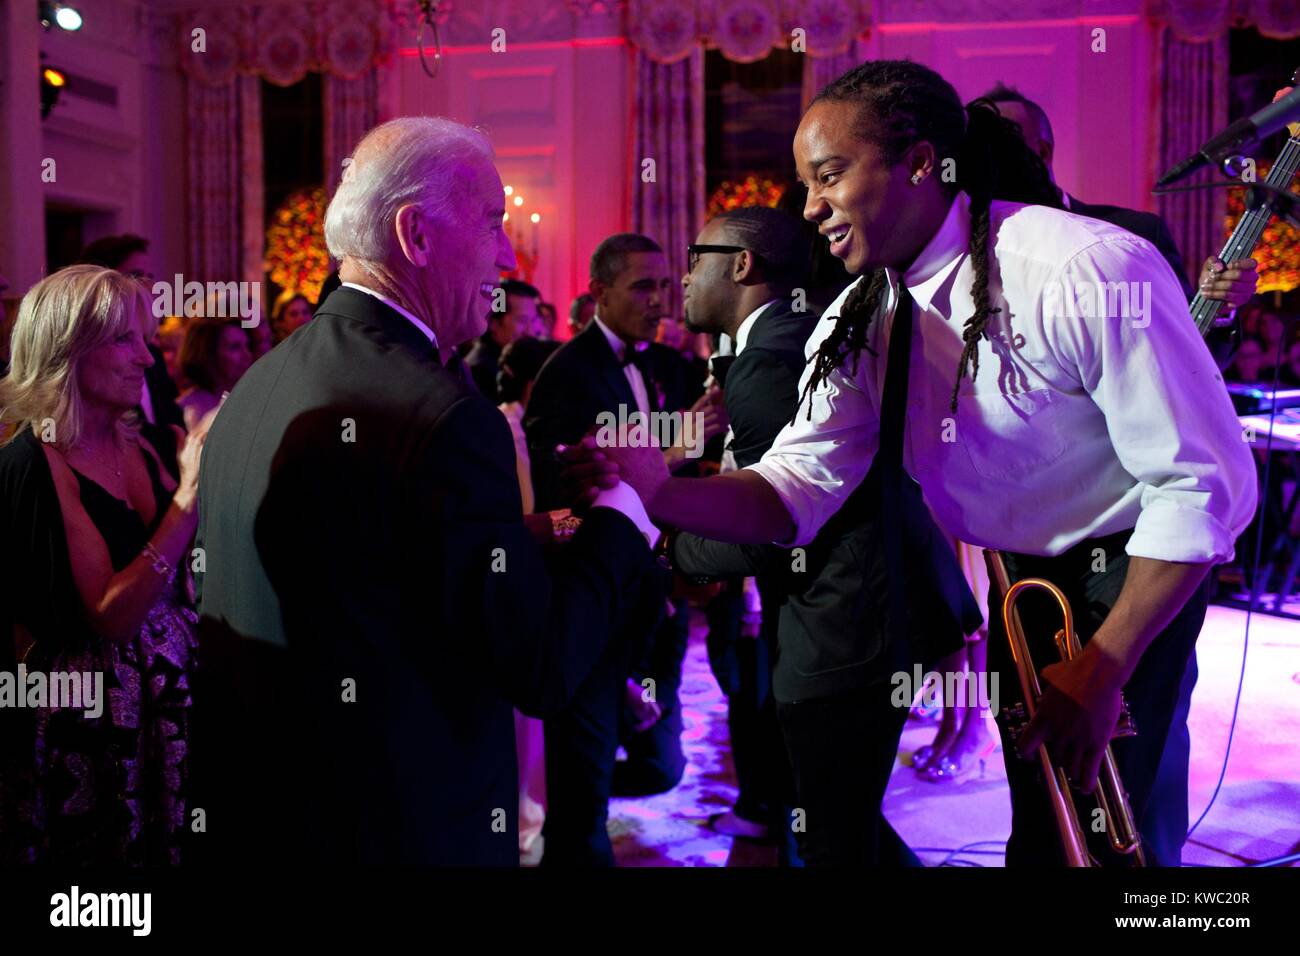 Vizepräsident Joe Biden grüßt Lance Powlis, ein Trompeter in Janelle monae's Band. Die Gruppe durchgeführt im Speisesaal des Weißen Hauses, Okt. 13, 2011. (BSLOC 2015 3 91) Stockfoto